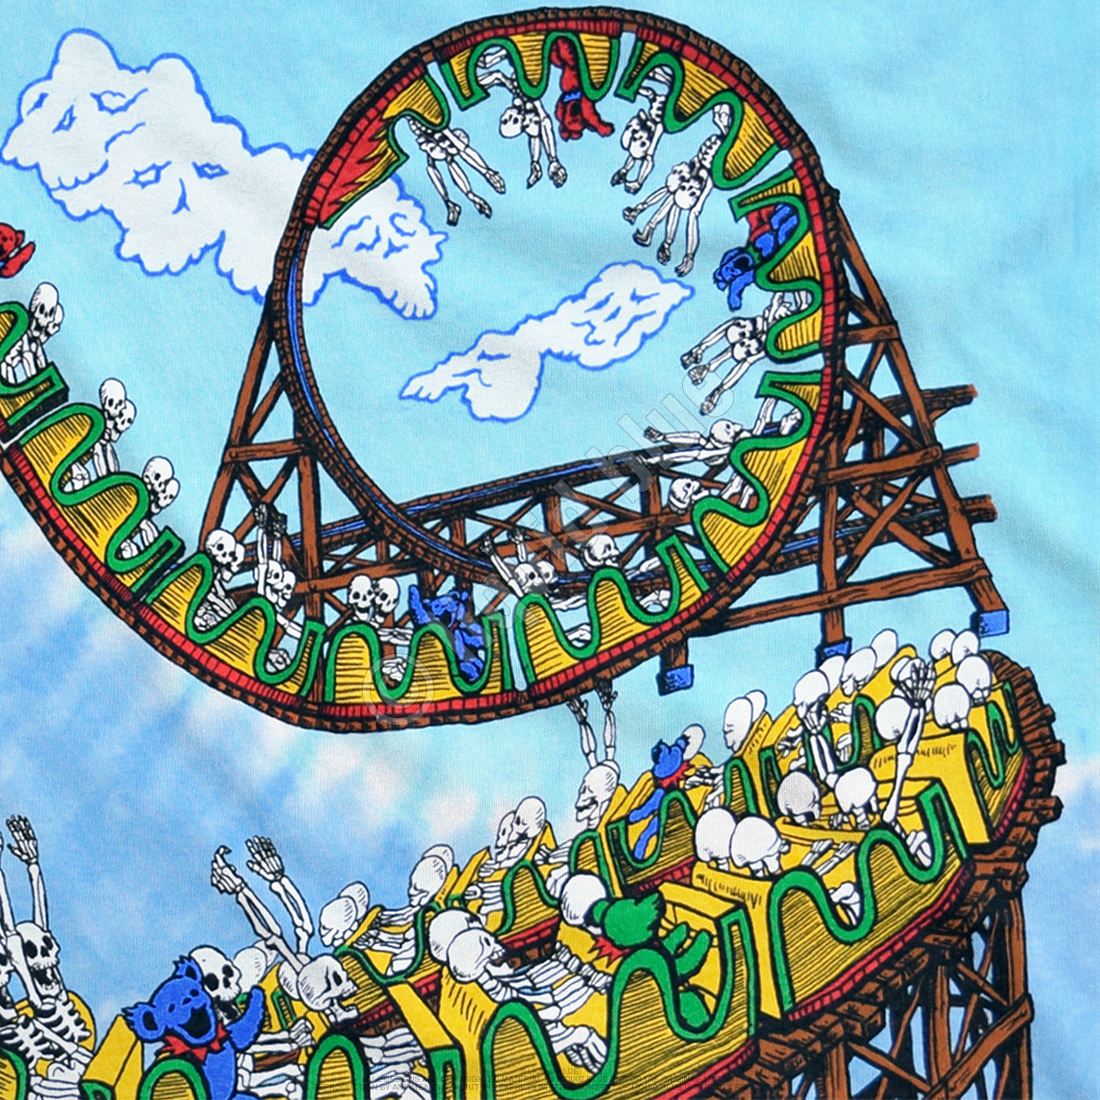 Liquid Blue Grateful Dead Amusement Park Tie-Dye T-Shirt XLarge